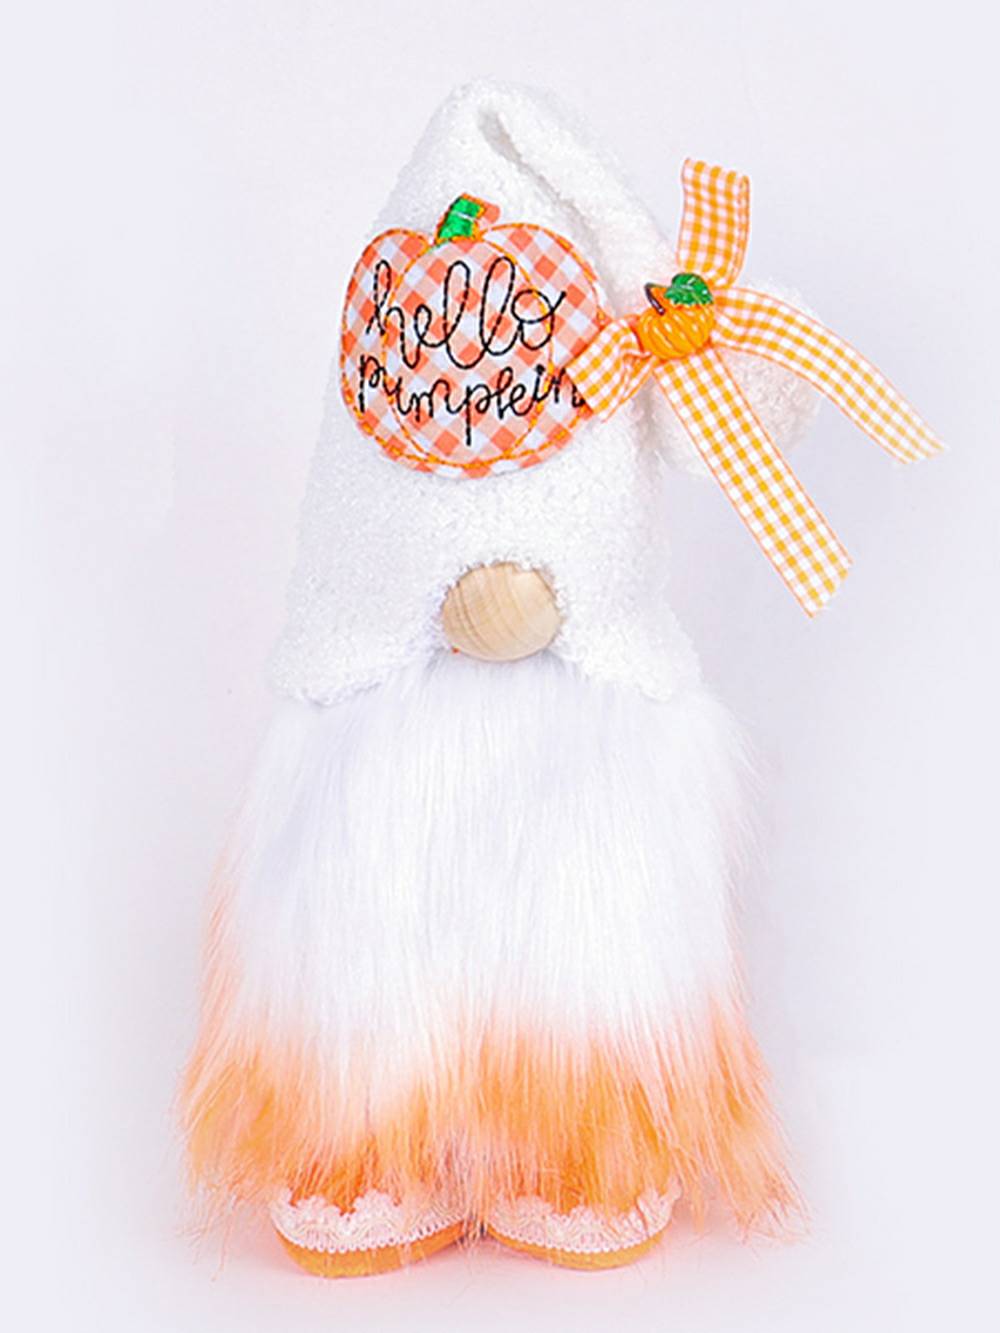 Χριστουγεννιάτικη διακόσμηση με όρθια φιγούρα κούκλας χωρίς πρόσωπο